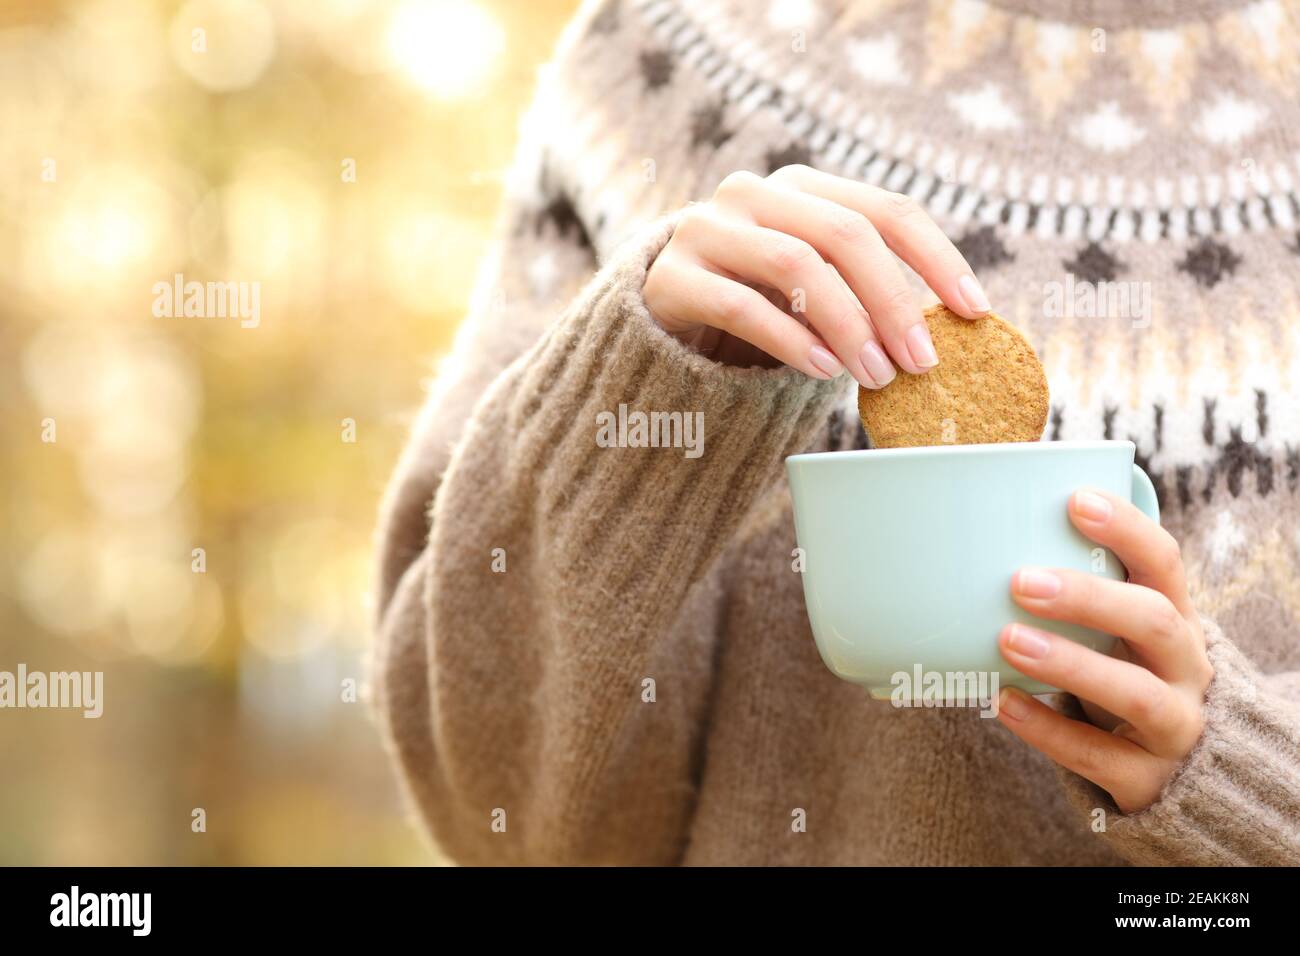 Une femme qui trempe un biscuit dans une tasse de café en automne Banque D'Images